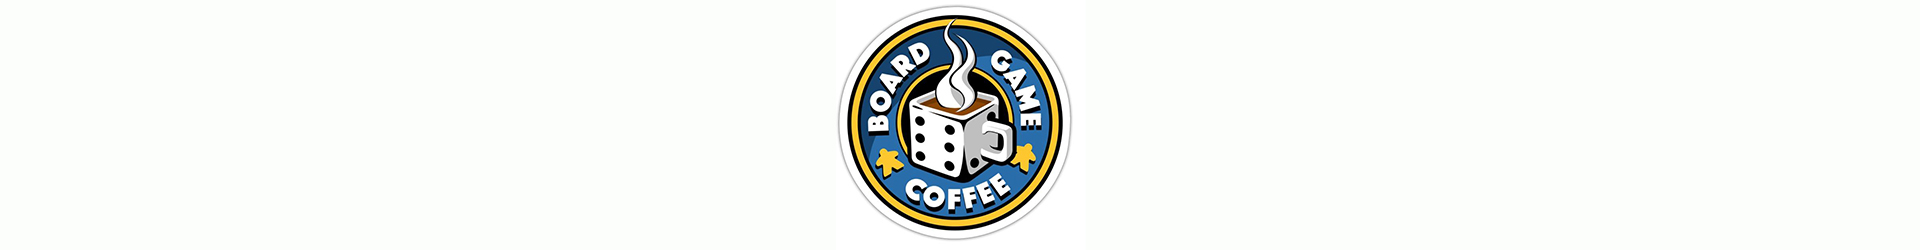 Board Game Coffee main